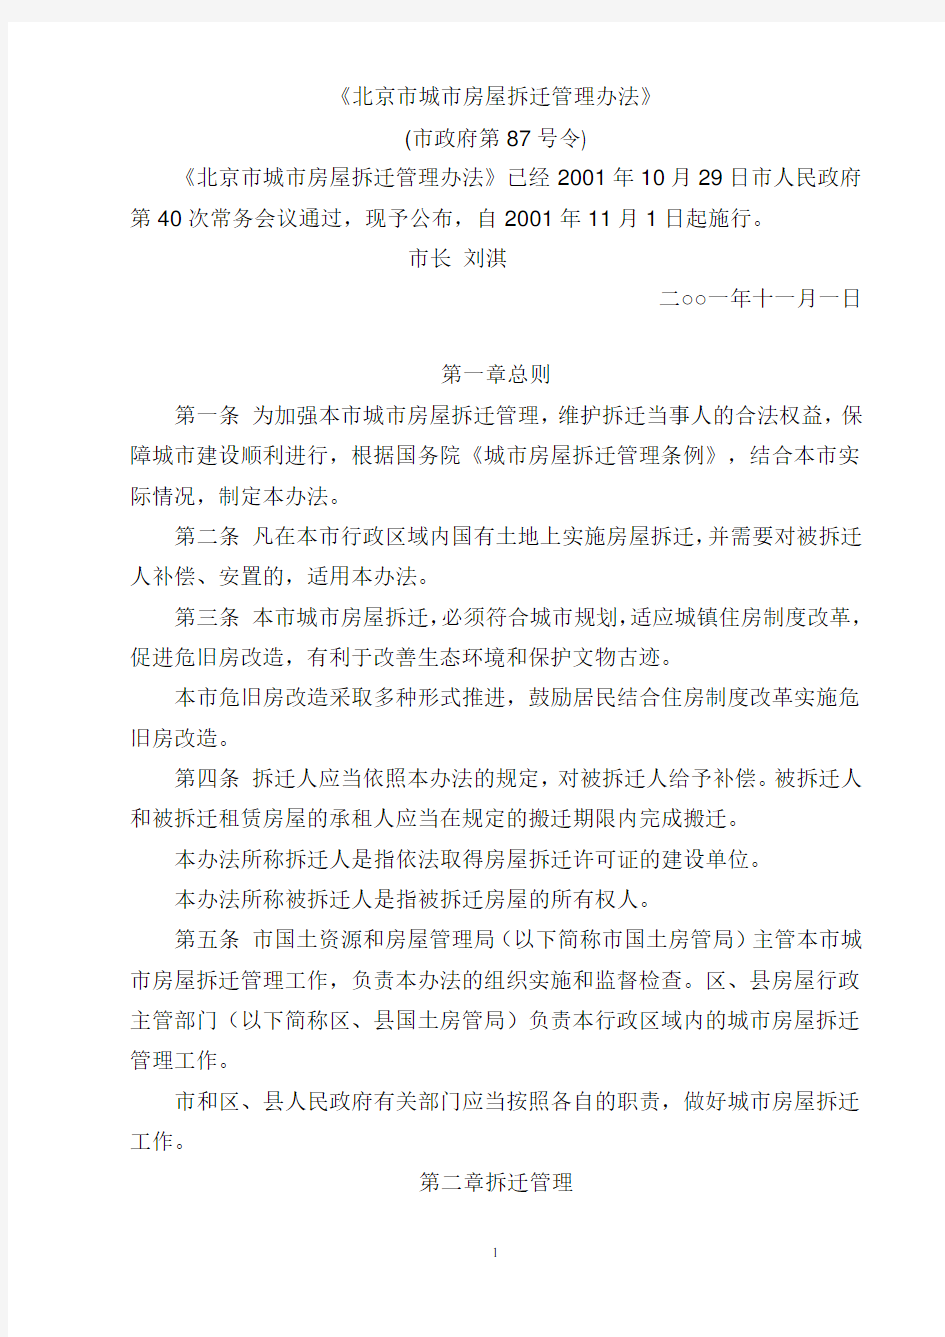 北京市城市房屋拆迁管理办法(87号令)